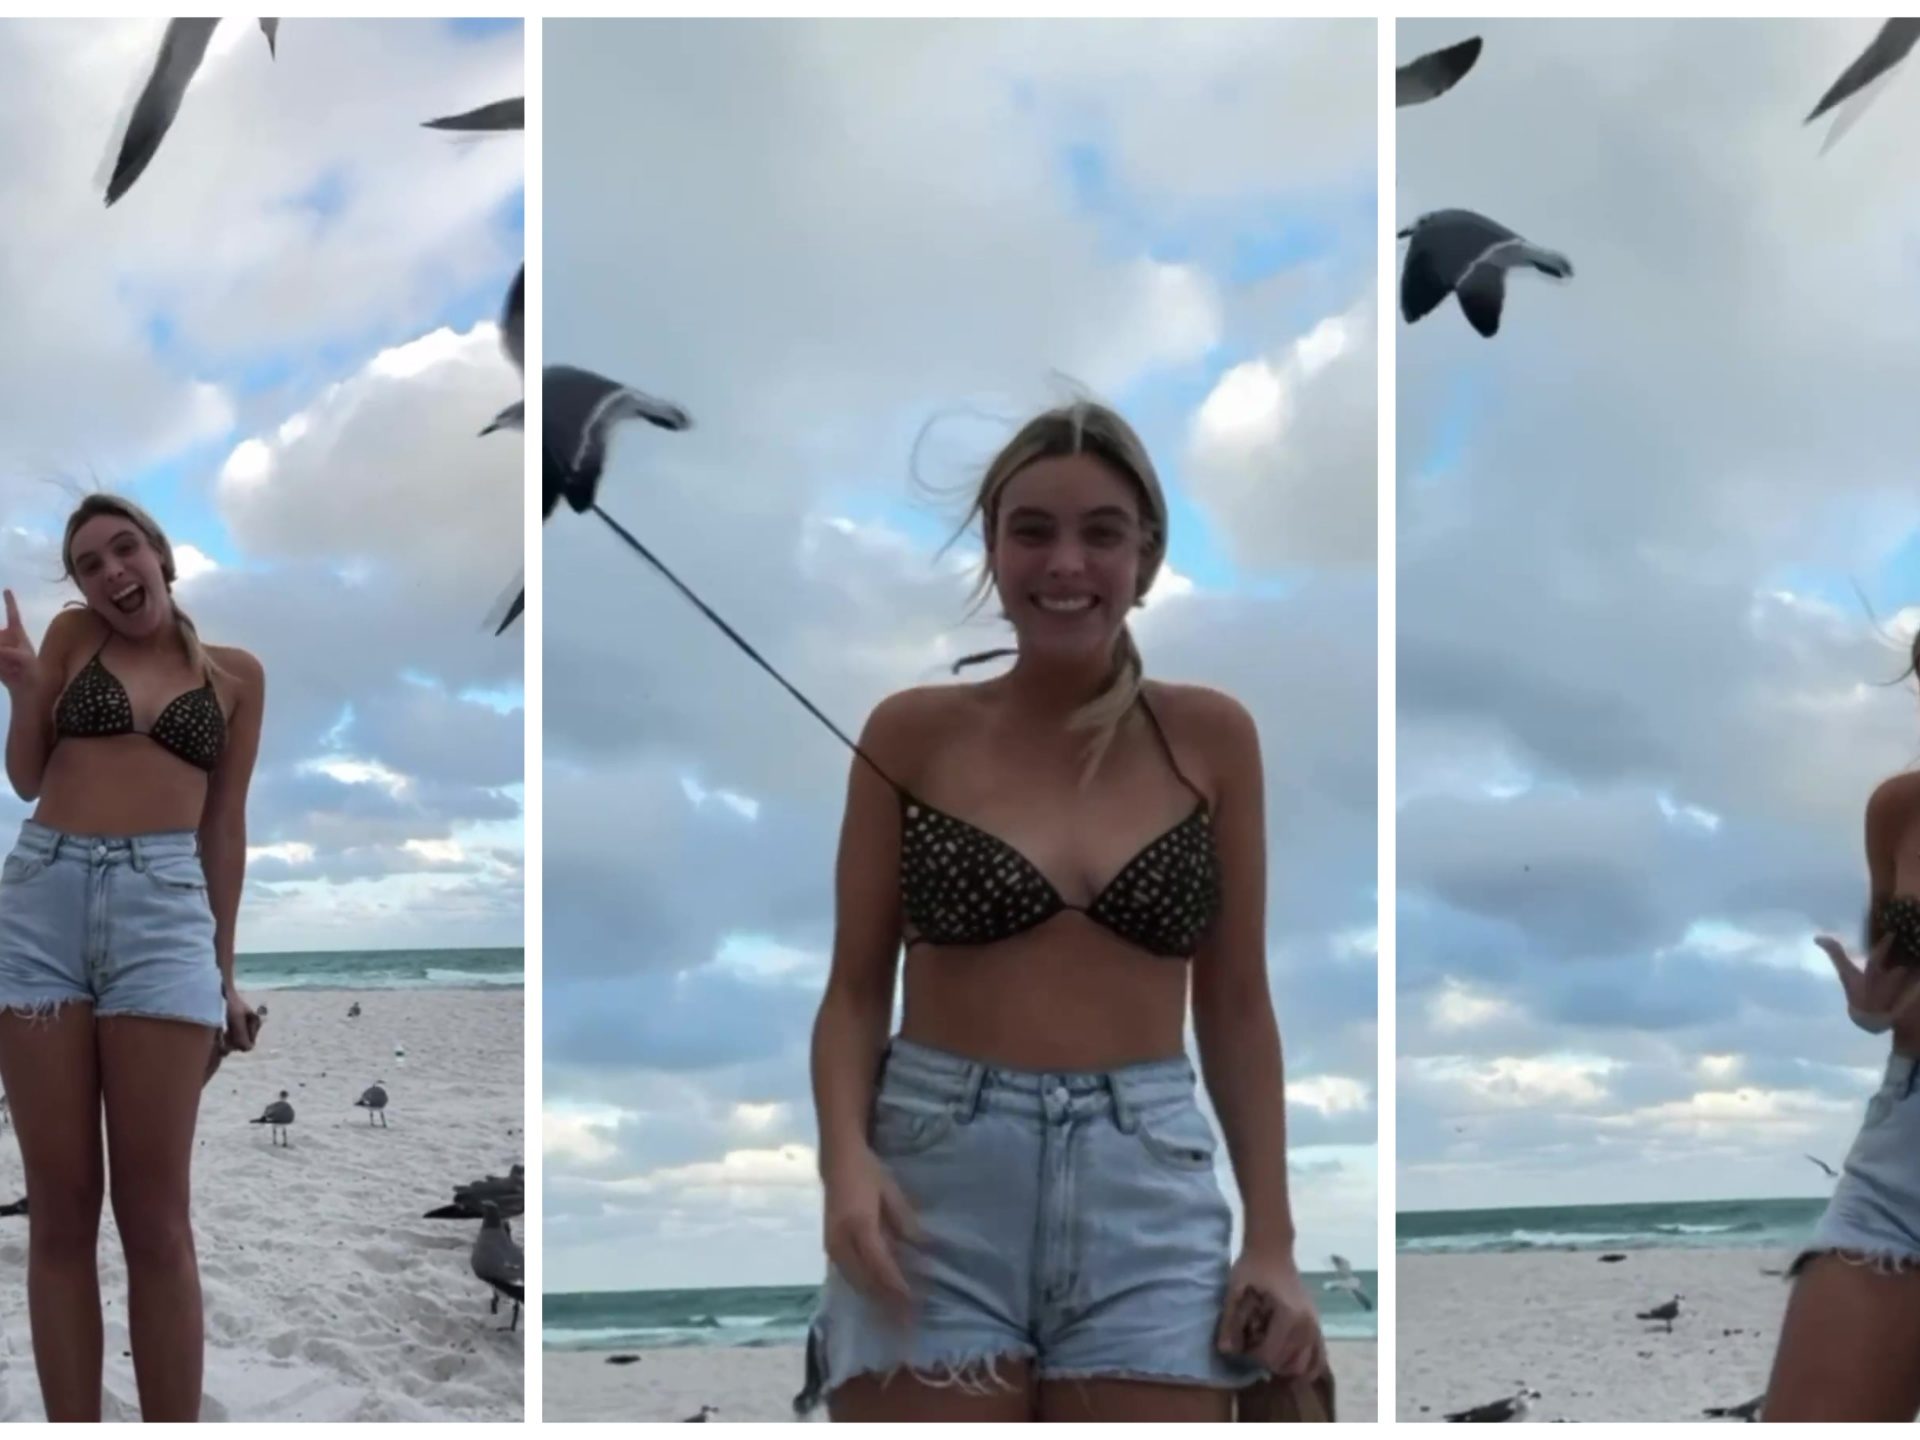 L'influencer Lele Pons spogliata in spiaggia da un gabbiano che le sfila il bikini